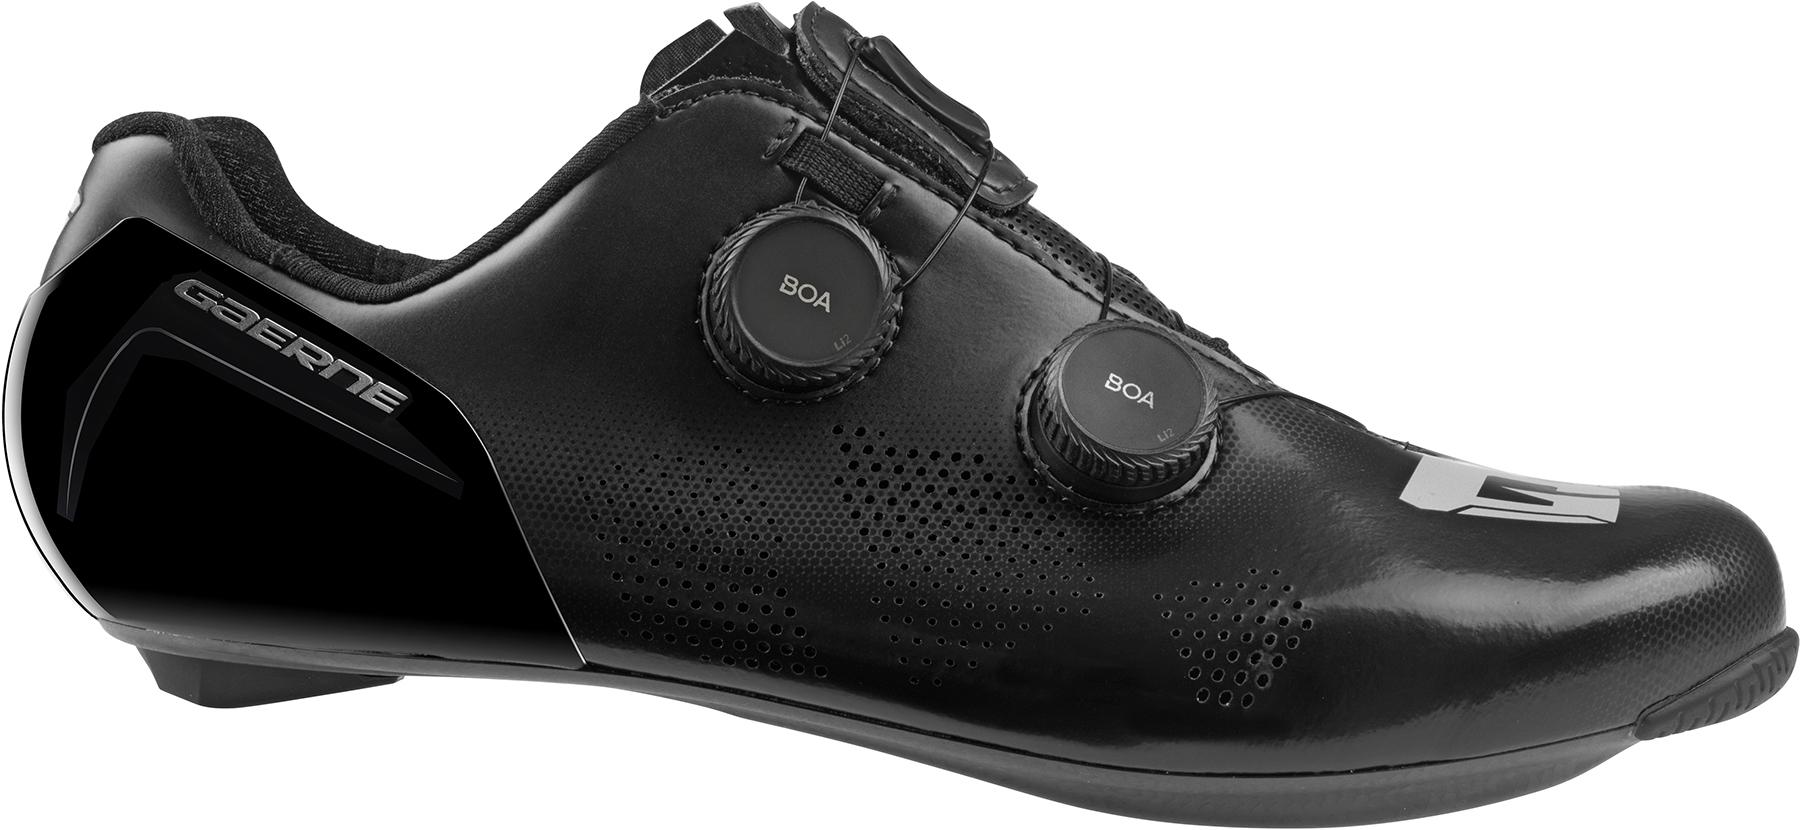 Gaerne Carbon G.stl Shoes  Black